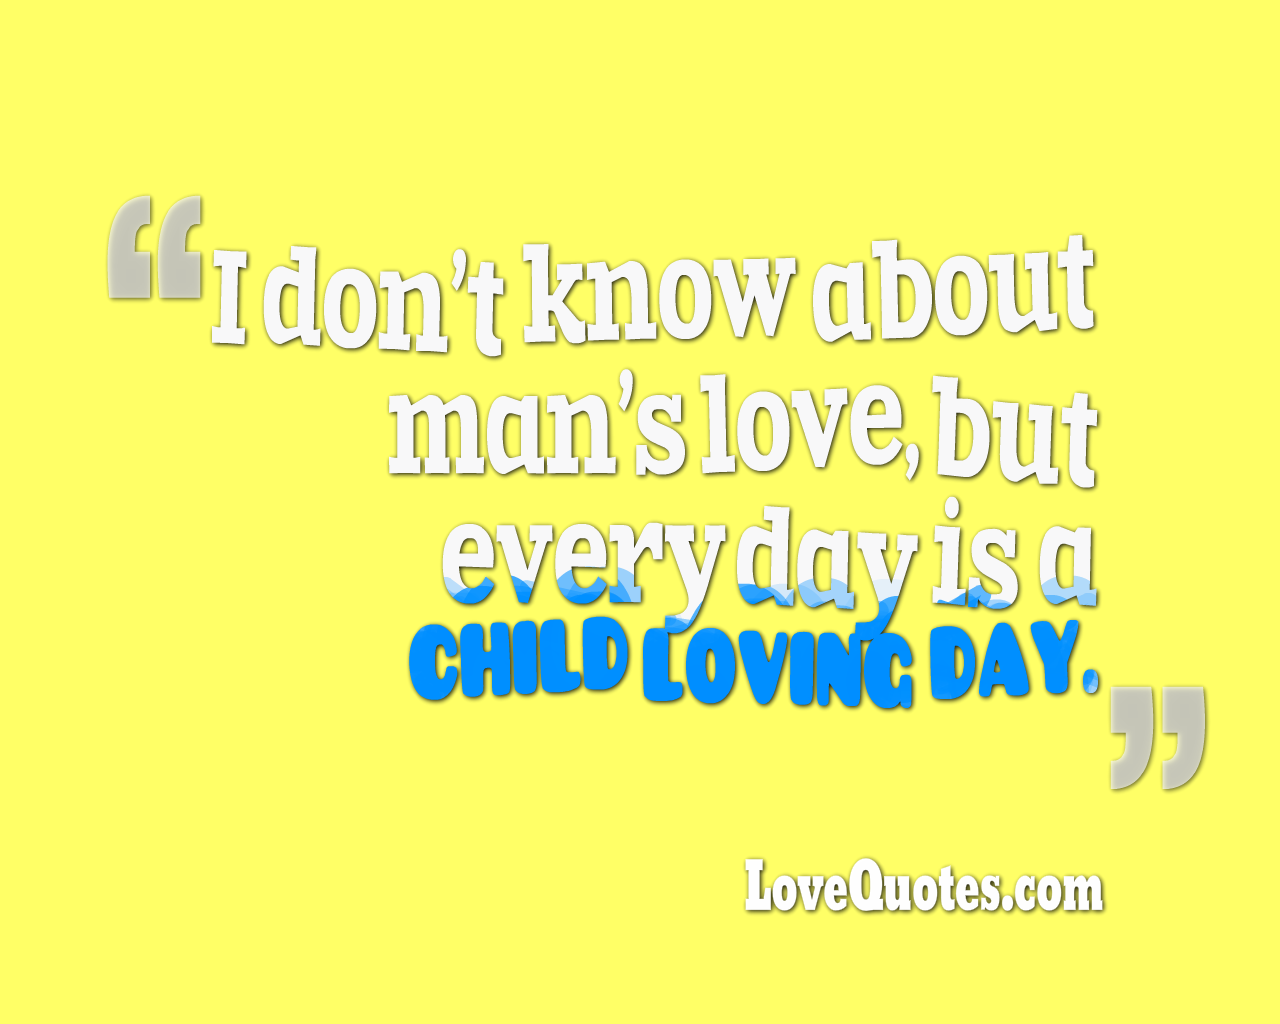 Child Loving Day